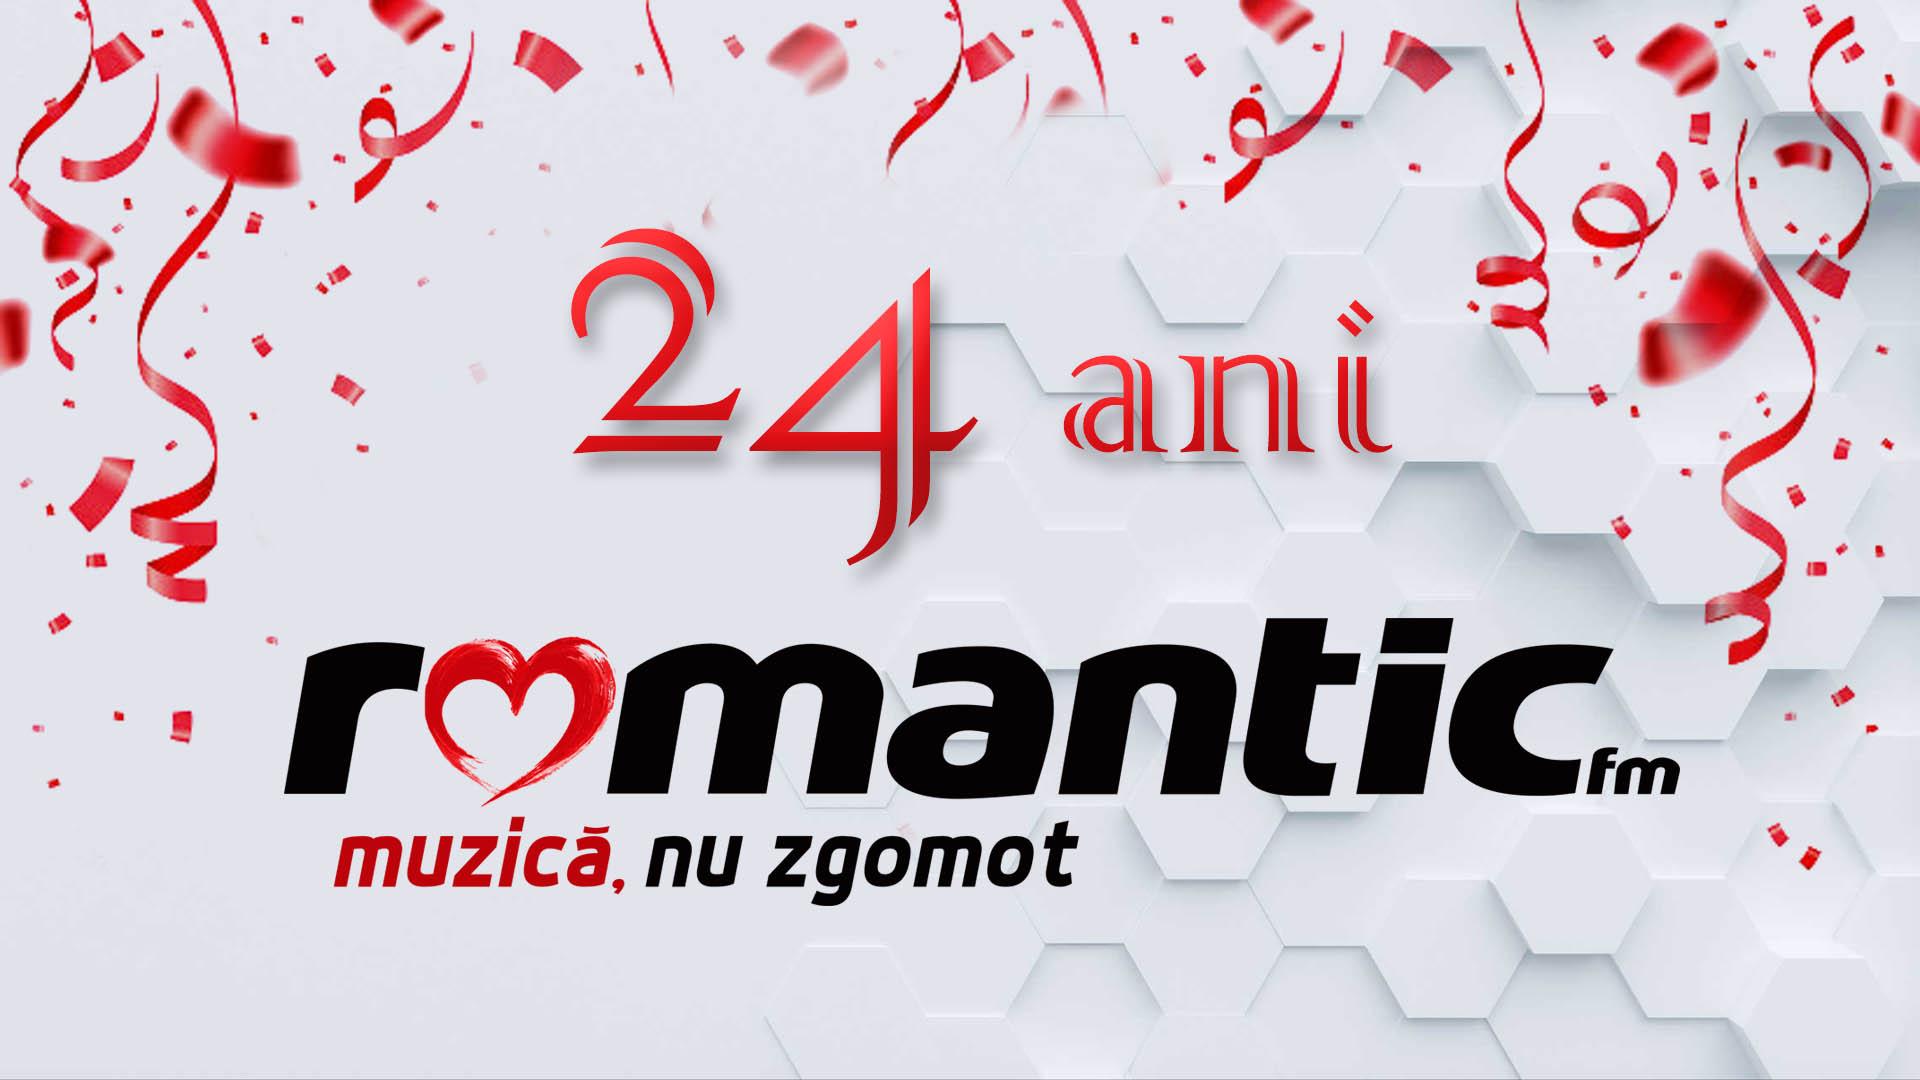 Romantic FM împlinește astăzi 24 de ani de când oferă „muzică, nu zgomot”!